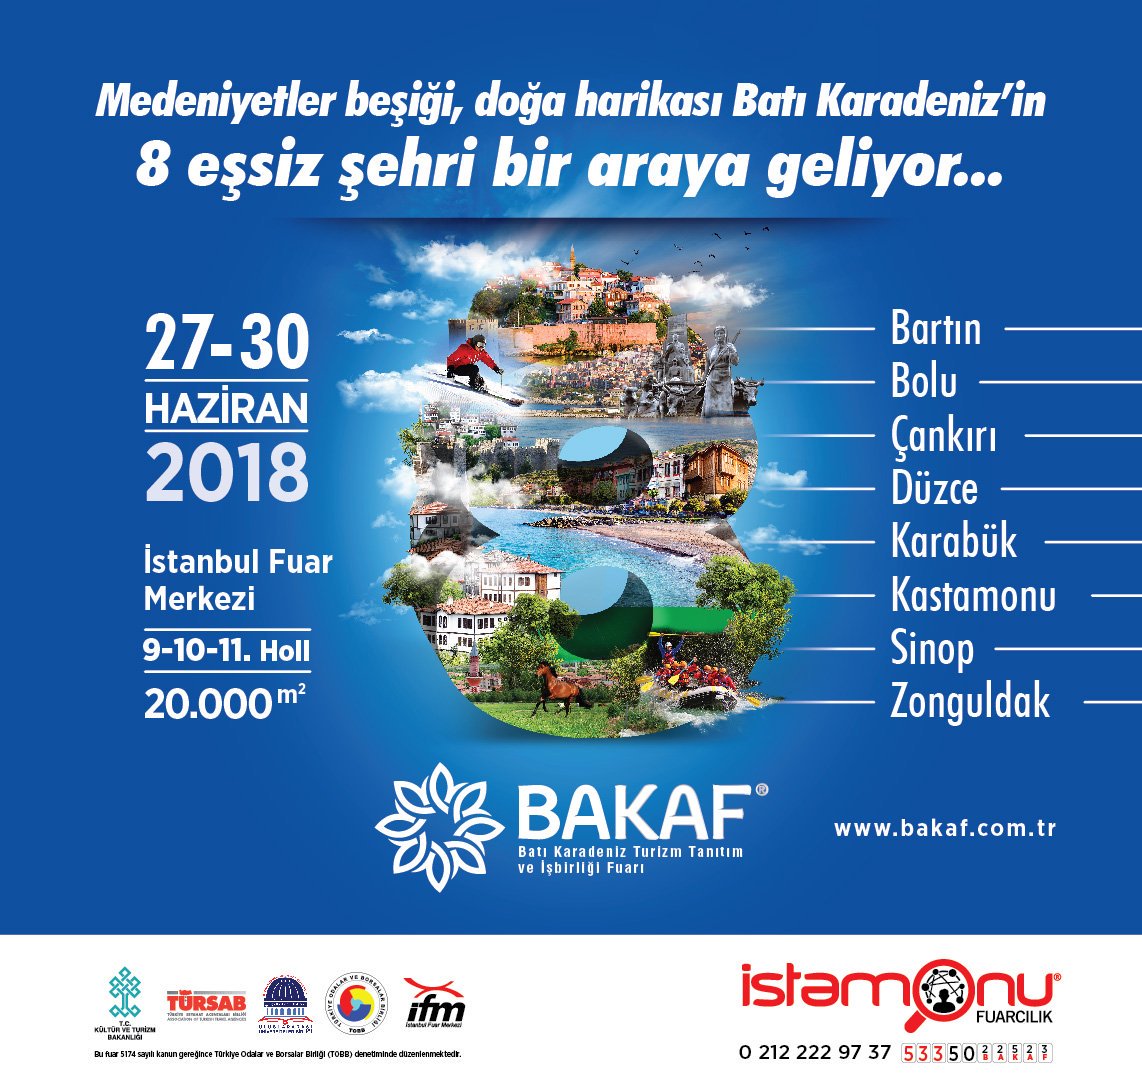 BAKAF 2018 Batı Karadeniz Turizm Tanıtım İş Birliği Fuarı